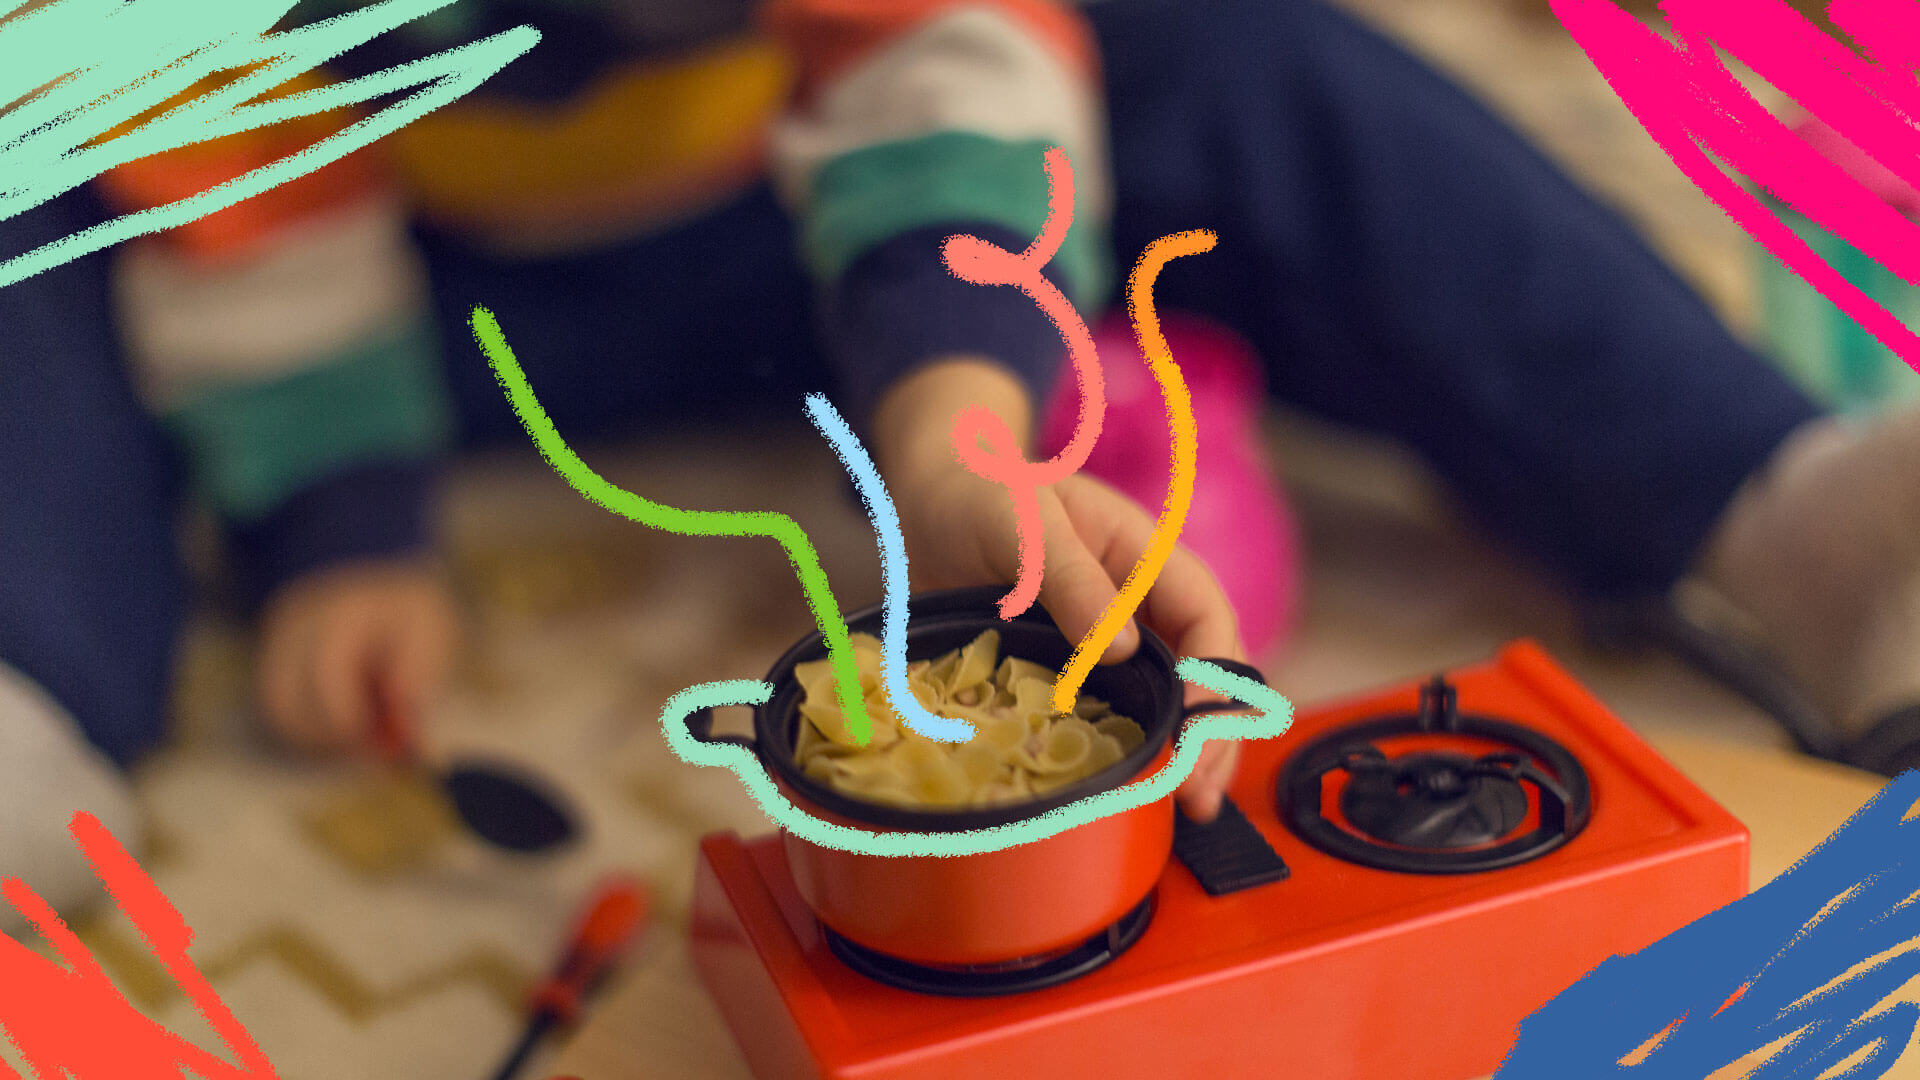 Mãos de uma criança brincando com um fogãozinho. Em cima de uma das bocas do fogão, existe uma panela com macarrão e água dentro.